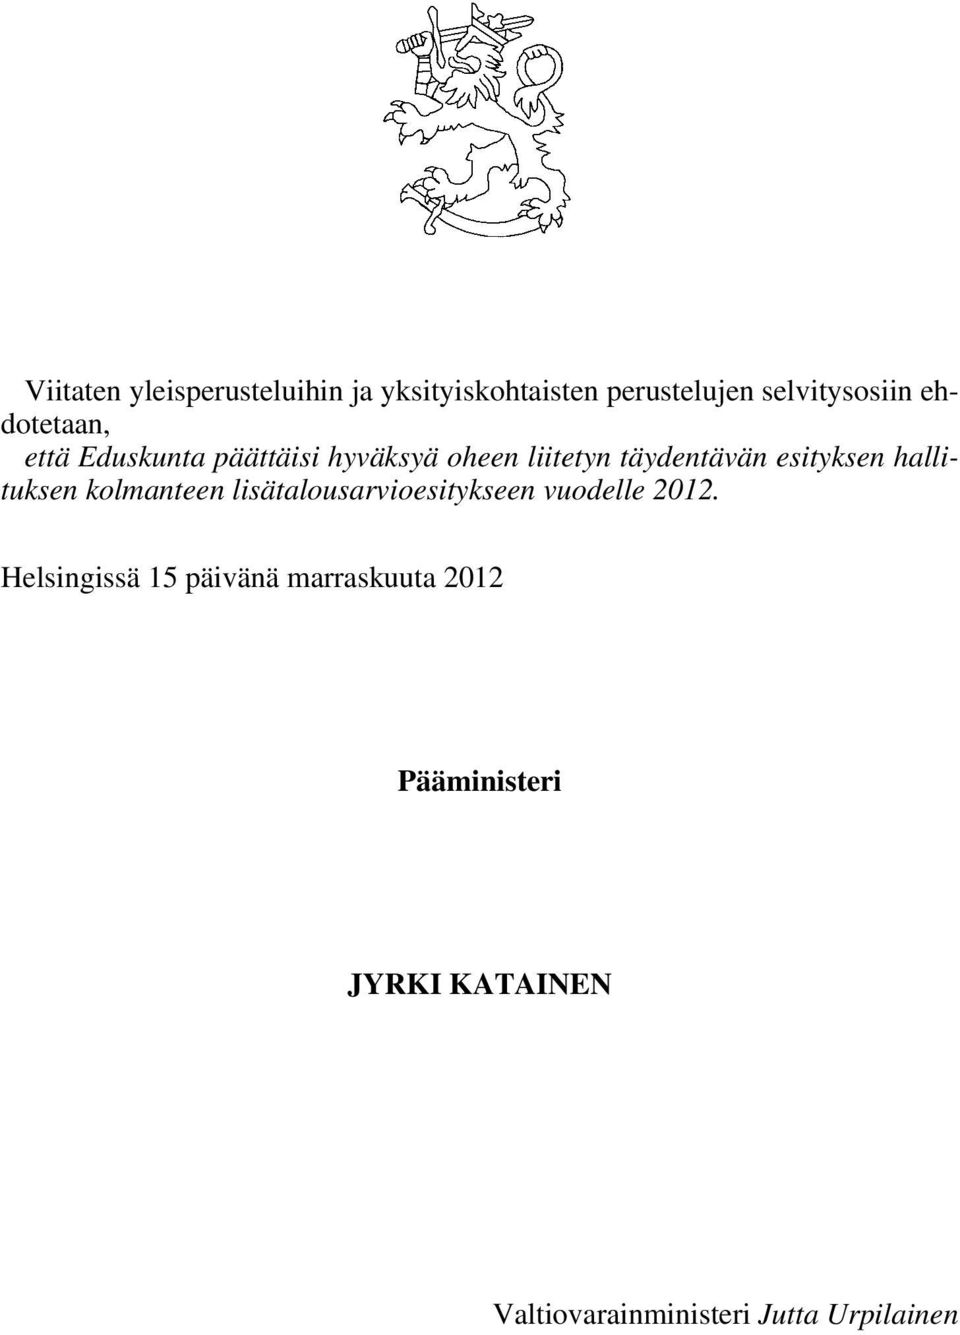 hallituksen kolmanteen lisätalousarvioesitykseen vuodelle 2012.